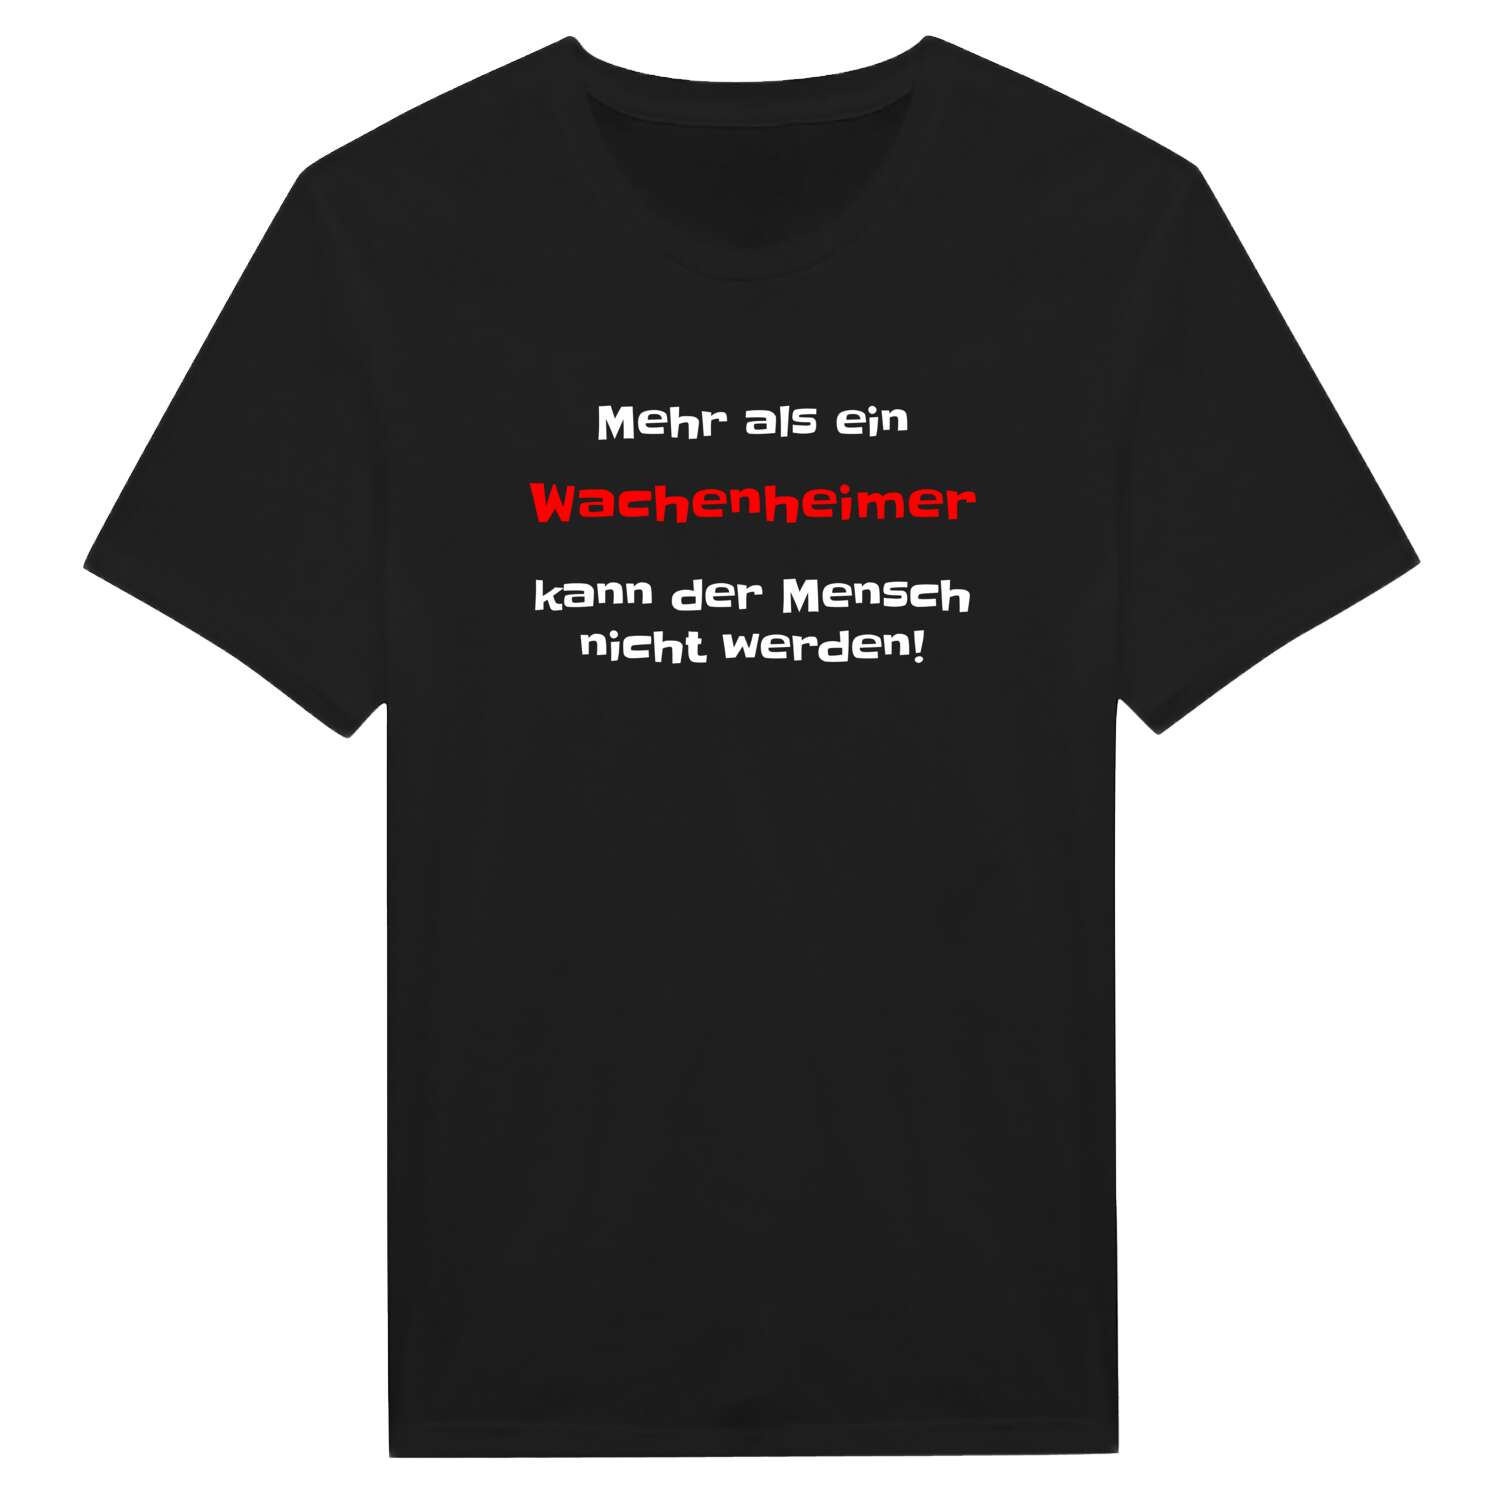 Wachenheim T-Shirt »Mehr als ein«